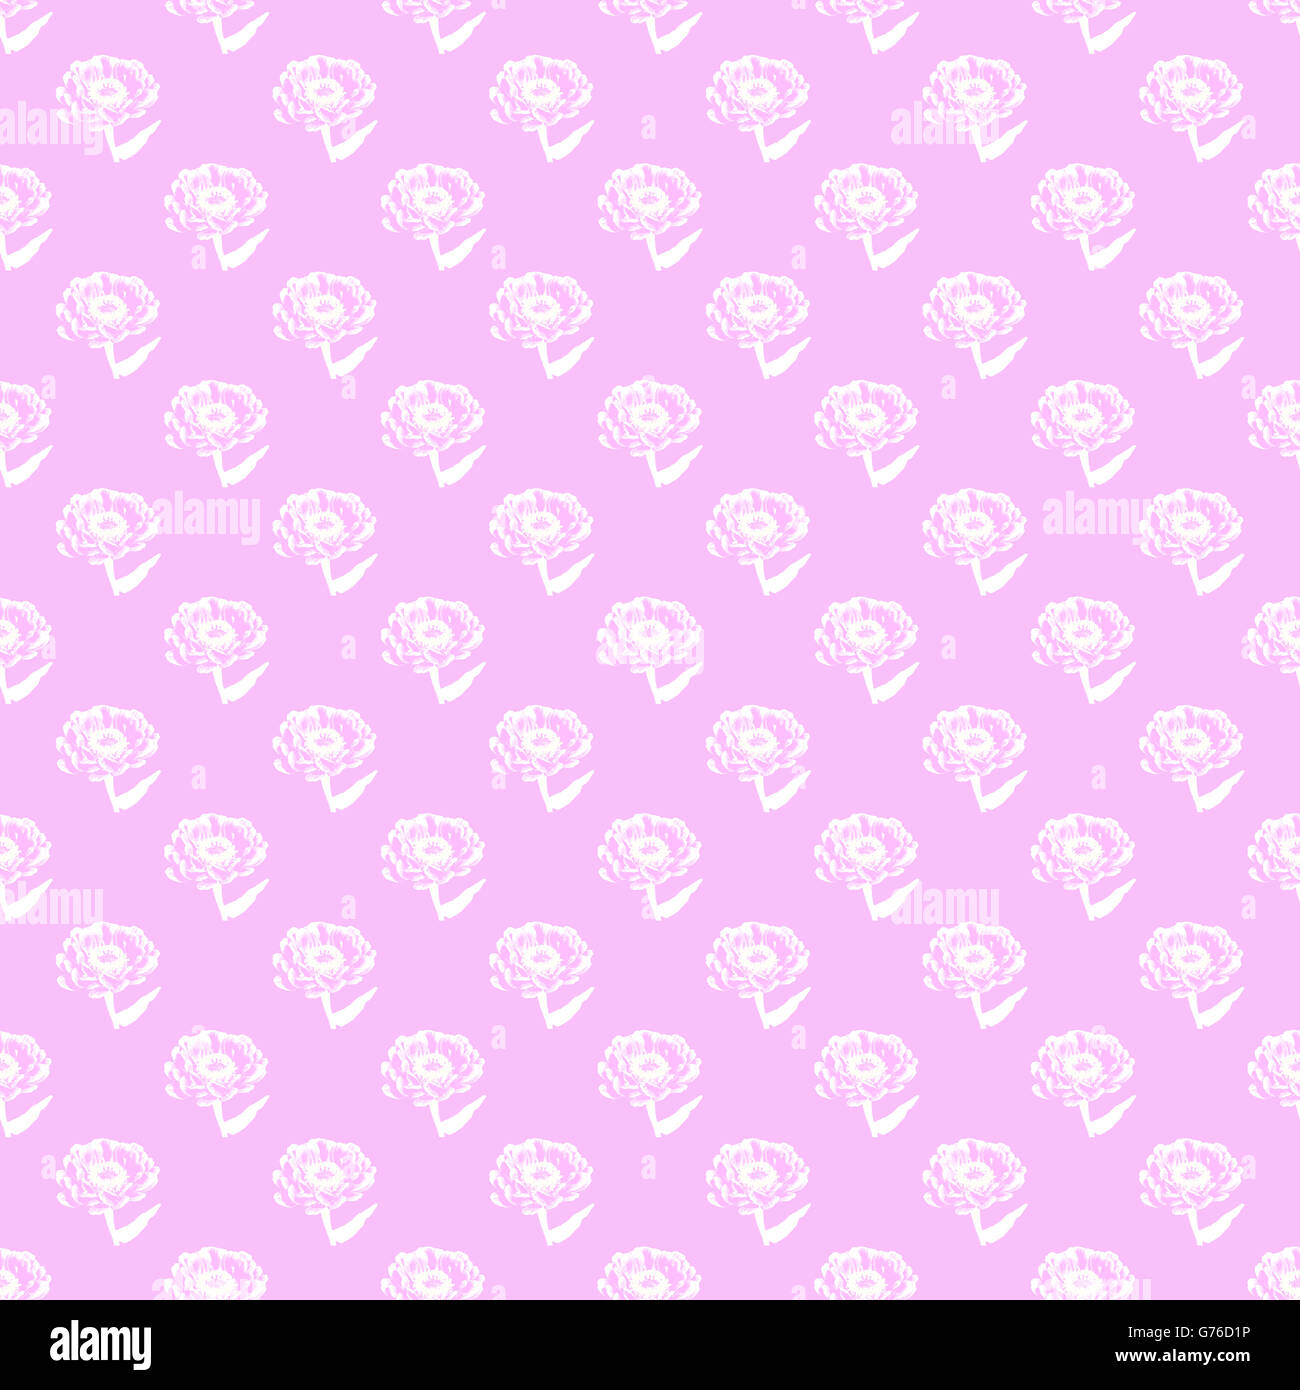 Nahtlos gekachelte Wiederholungsmuster von zarten weißen Blüten vor rosa Hintergrund Stockfoto